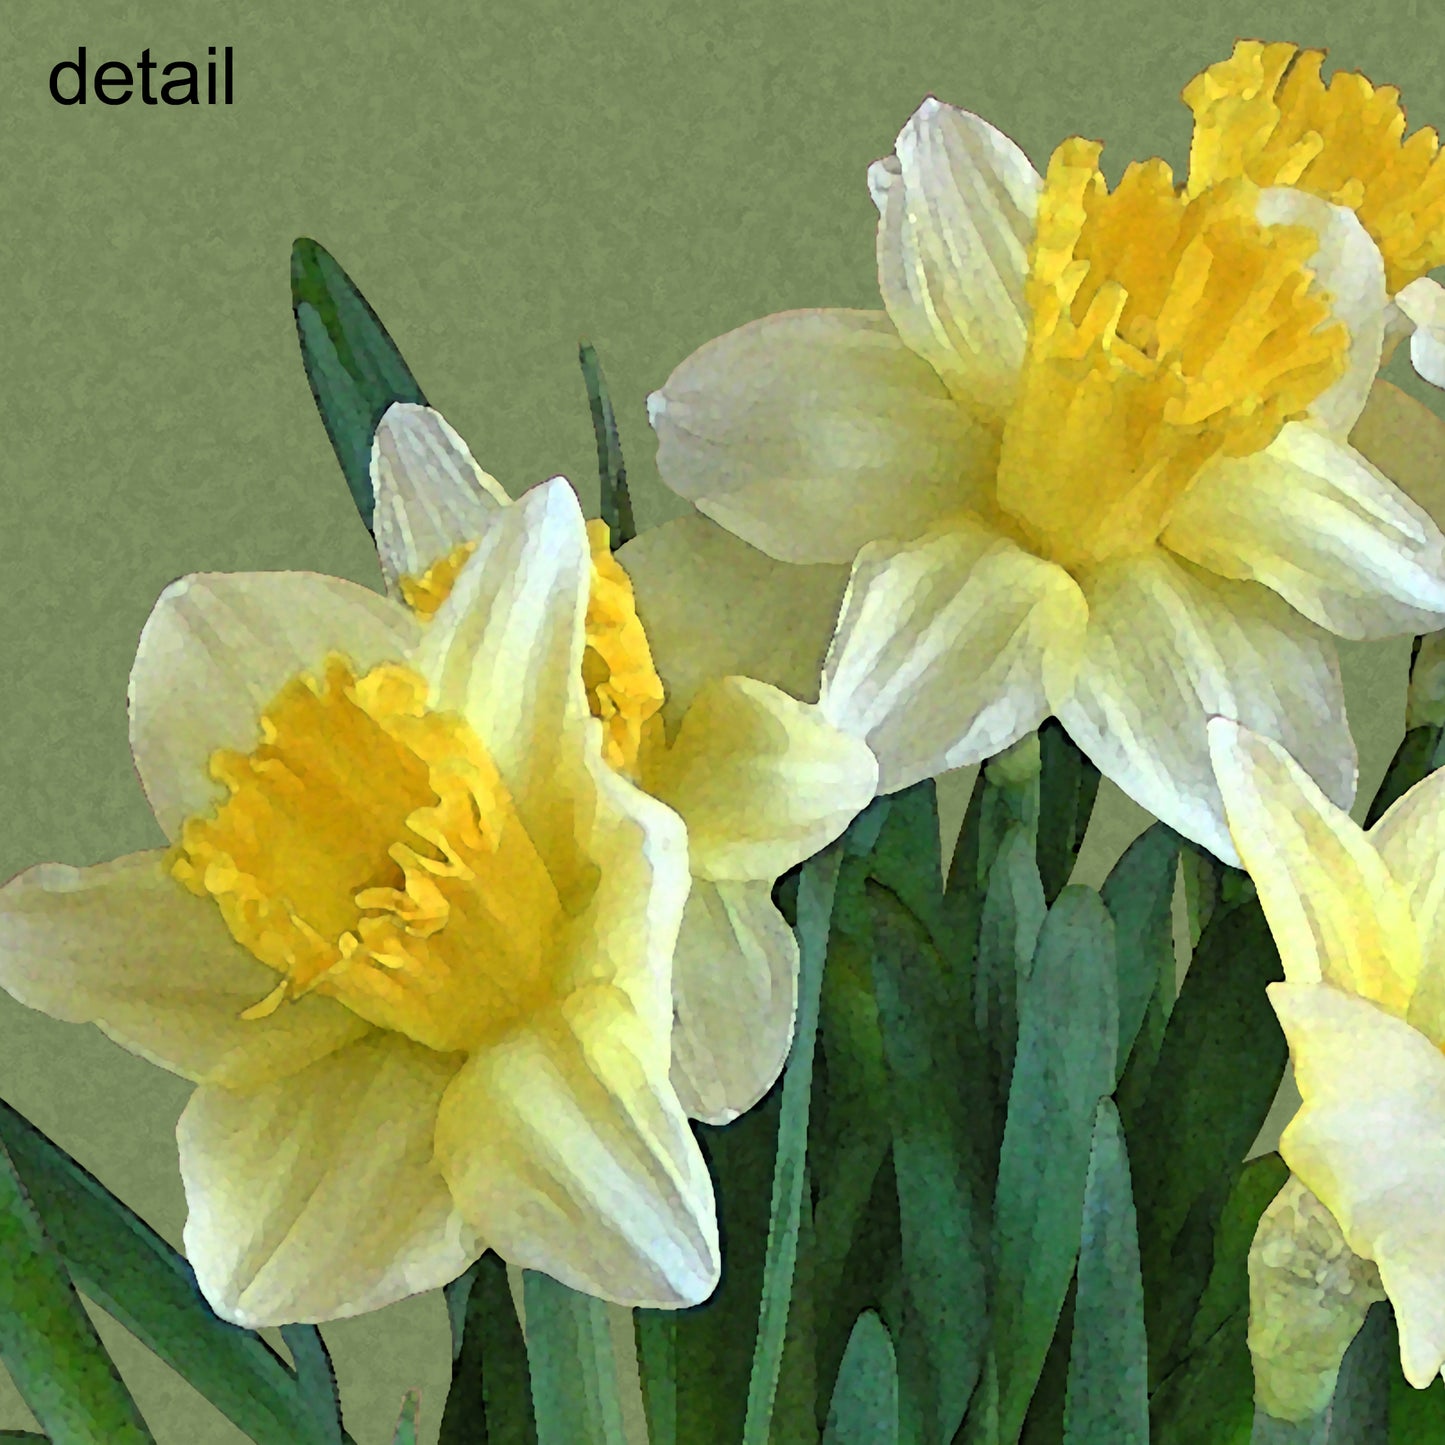 Daffodil Bouquet Designer Greeting Card